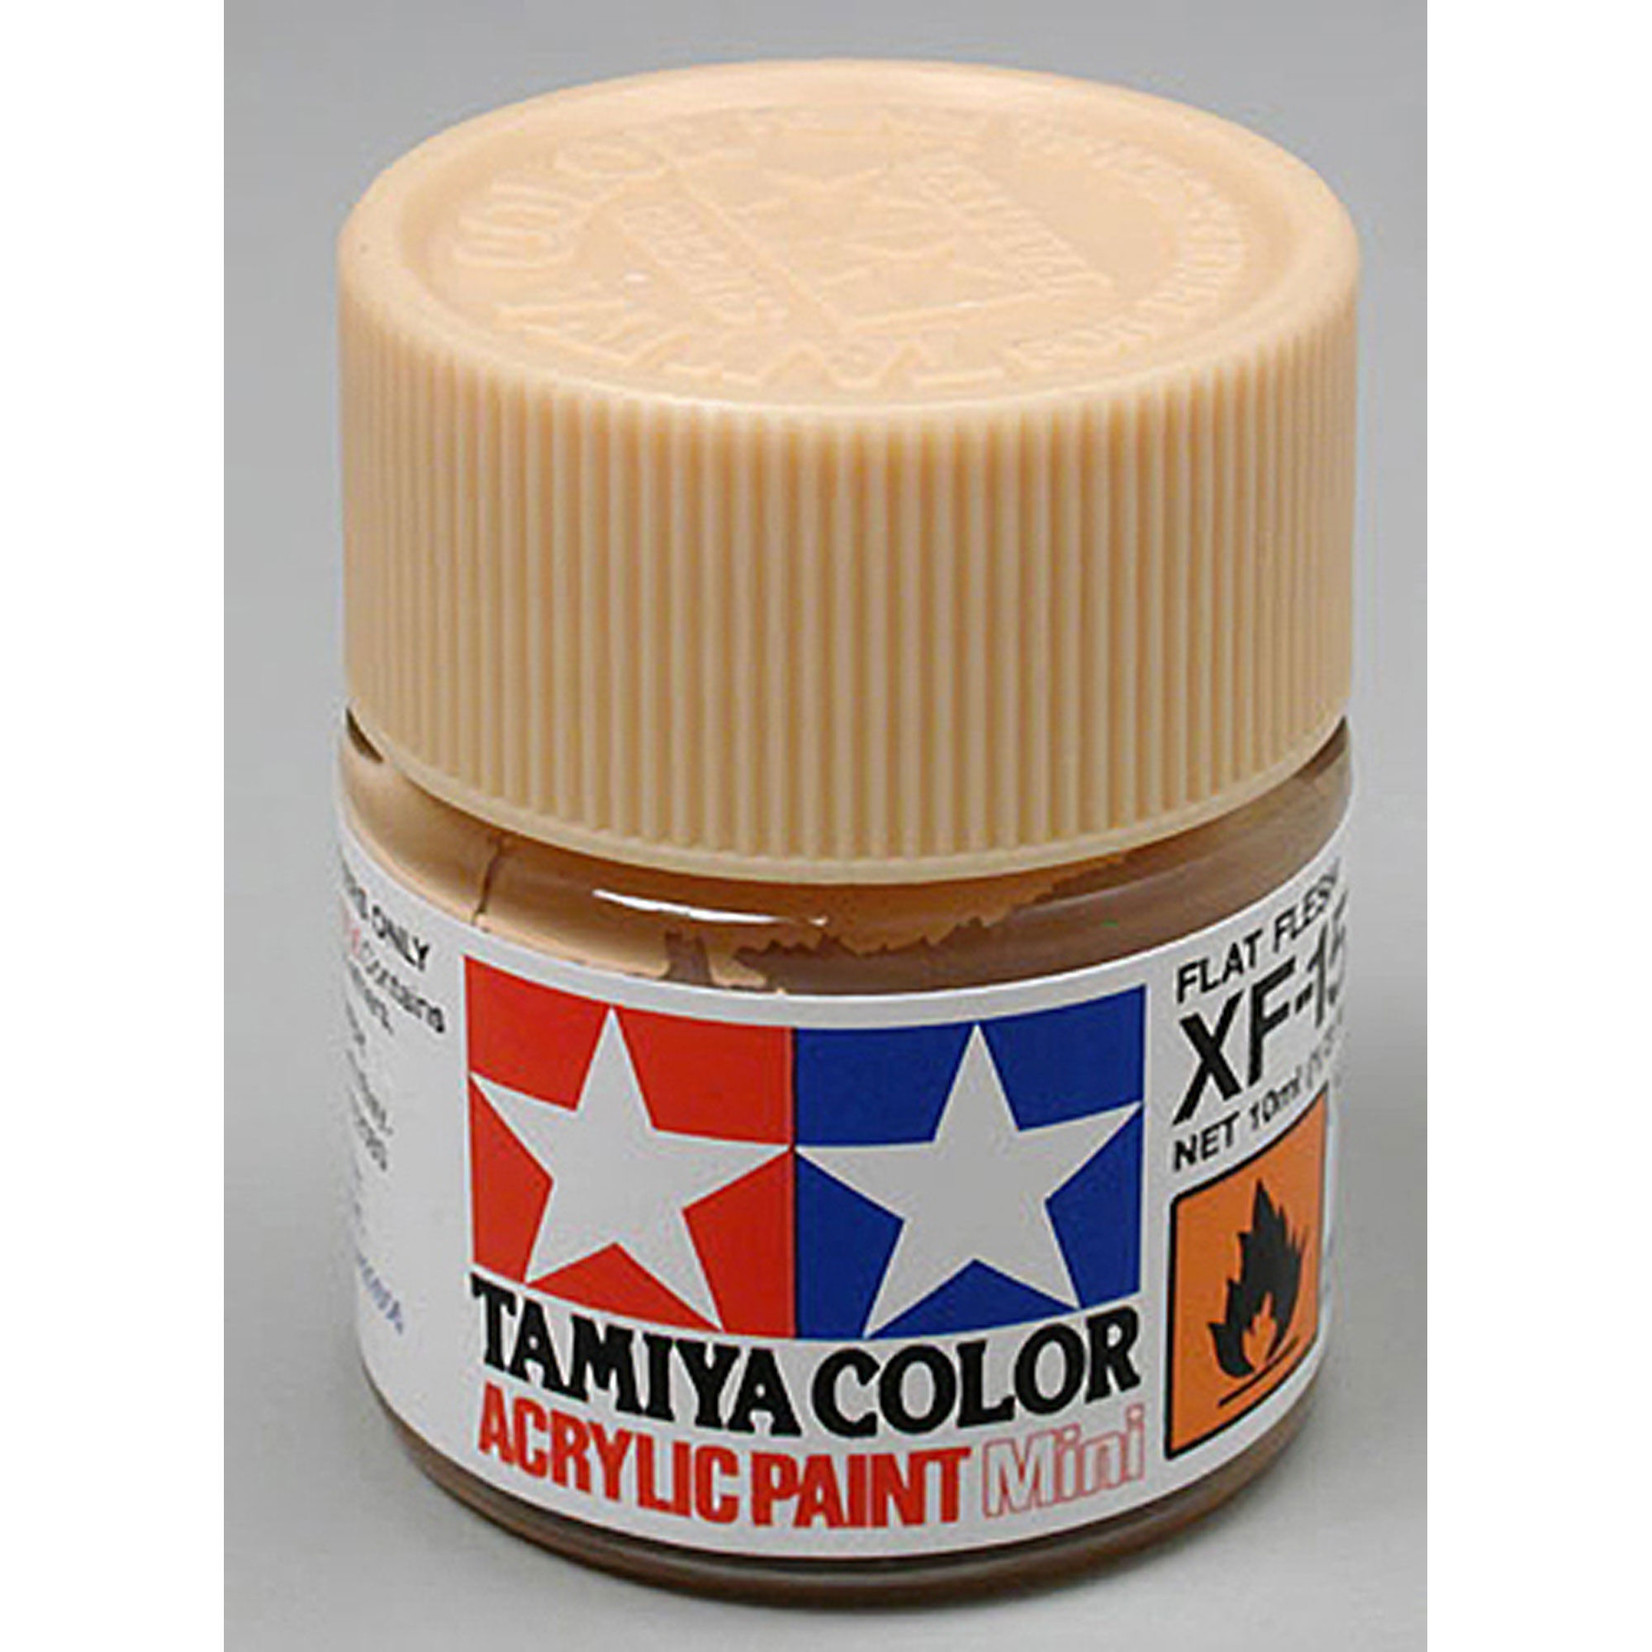 Tamiya Acrylic Mini XF15, Flat Flesh